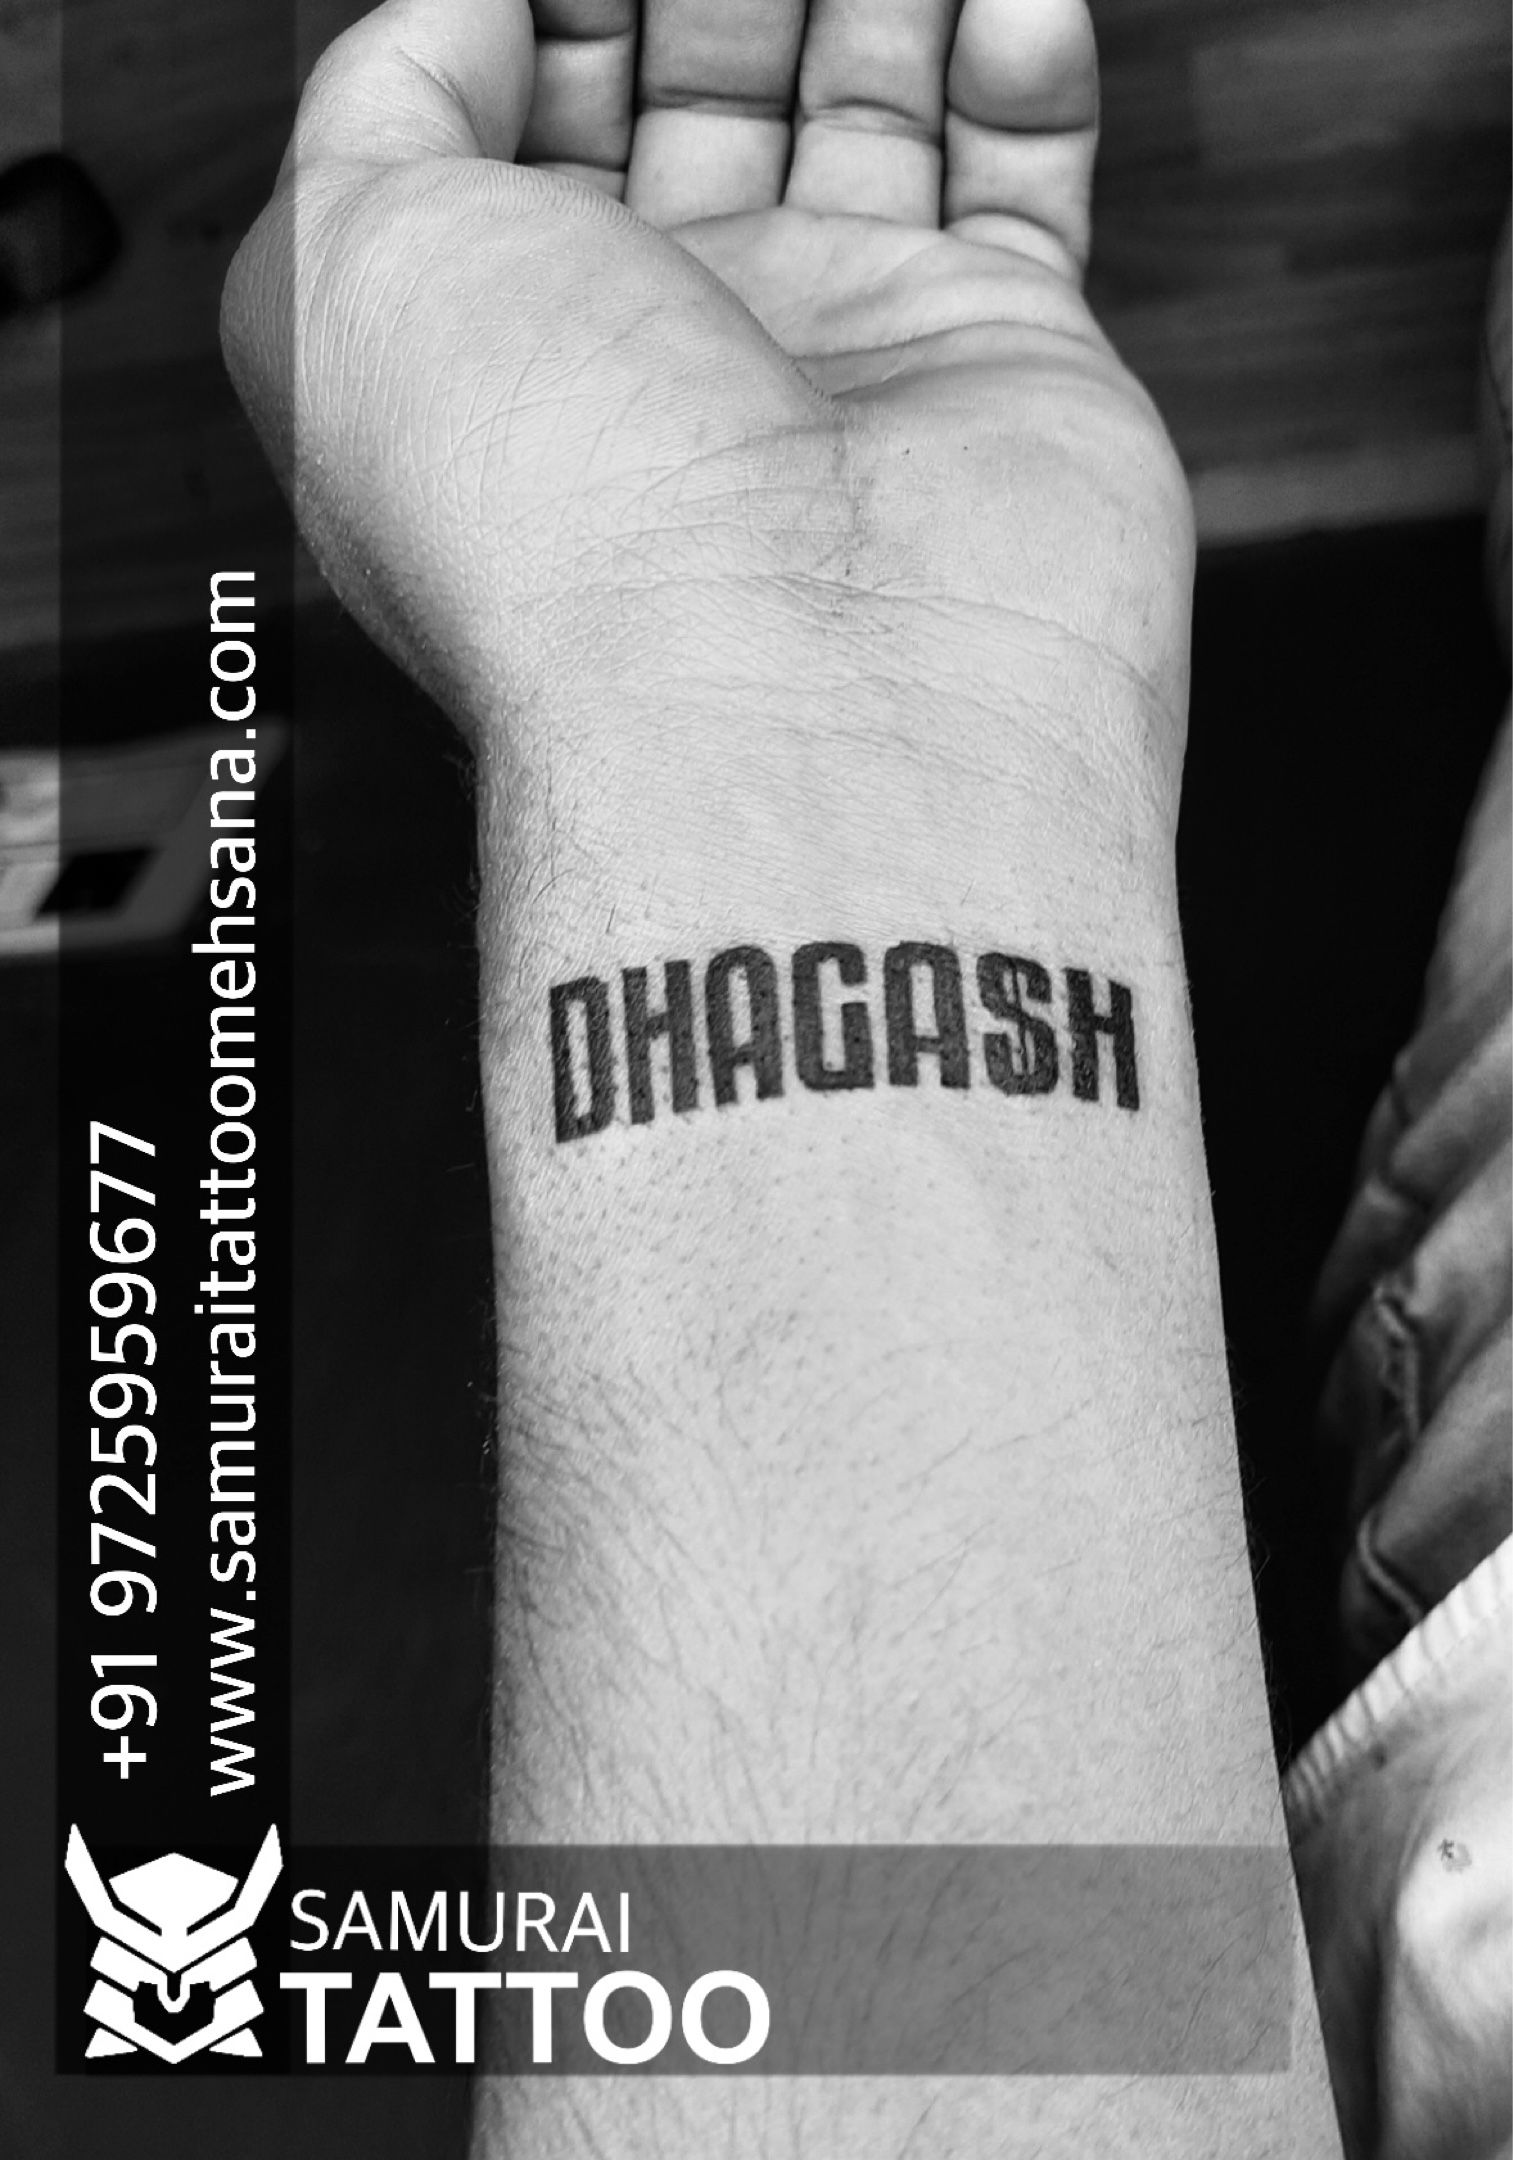 Tushar silawat 100% original tattoo designs.👍 #tusharsilawat #tushar -  YouTube